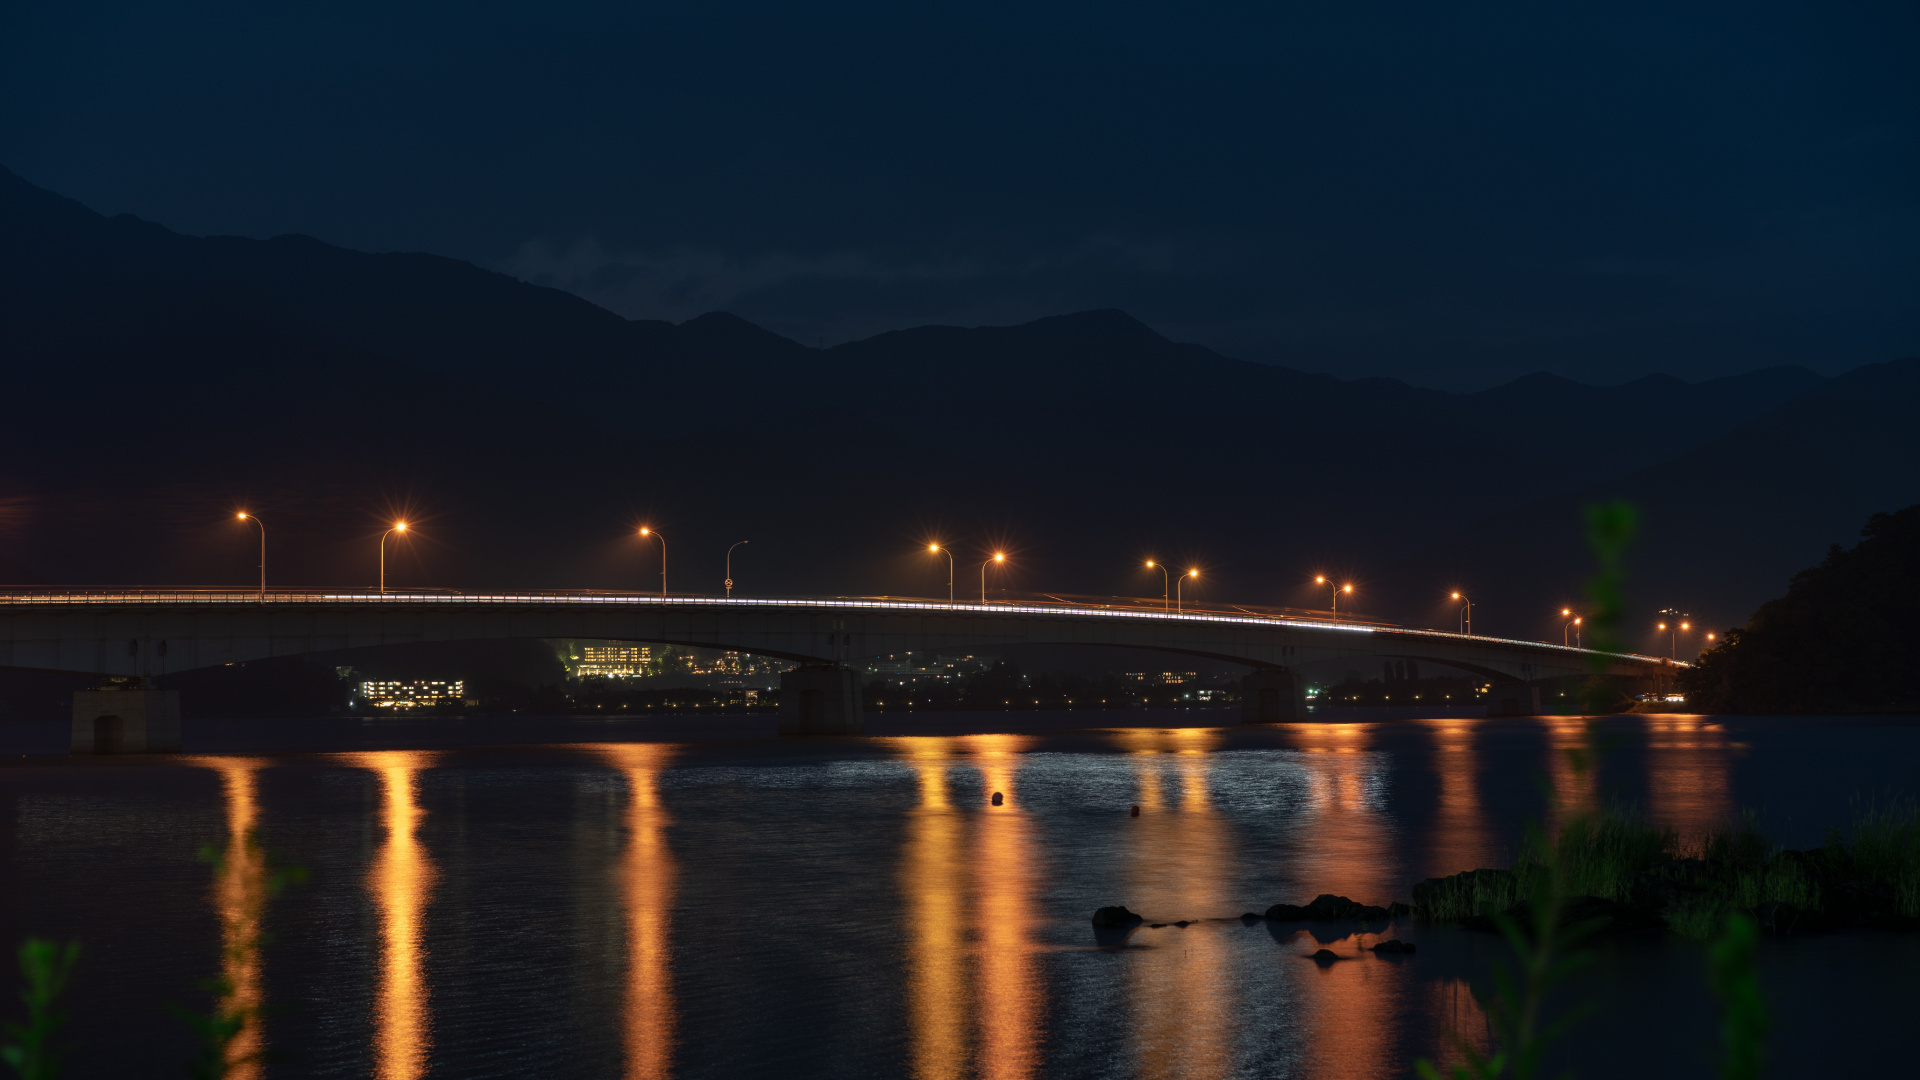 Beleuchtete Brücke Über Wasser Während Der Nacht Night. Wallpaper in 1920x1080 Resolution